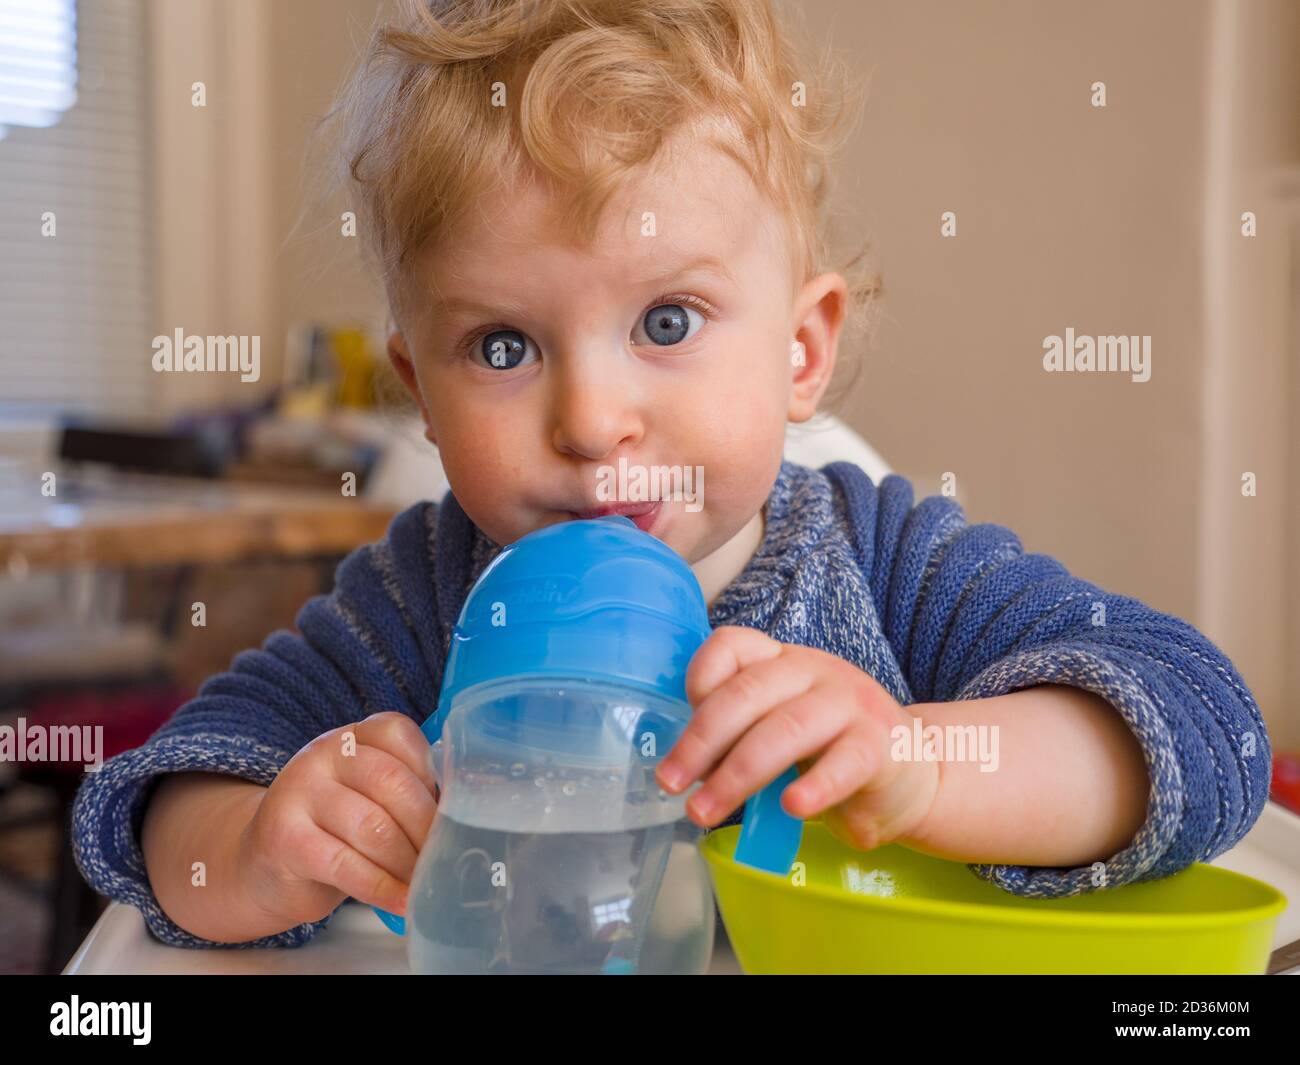 Bébé garçon d'un an qui boit de l'eau tout en mangeant Banque D'Images